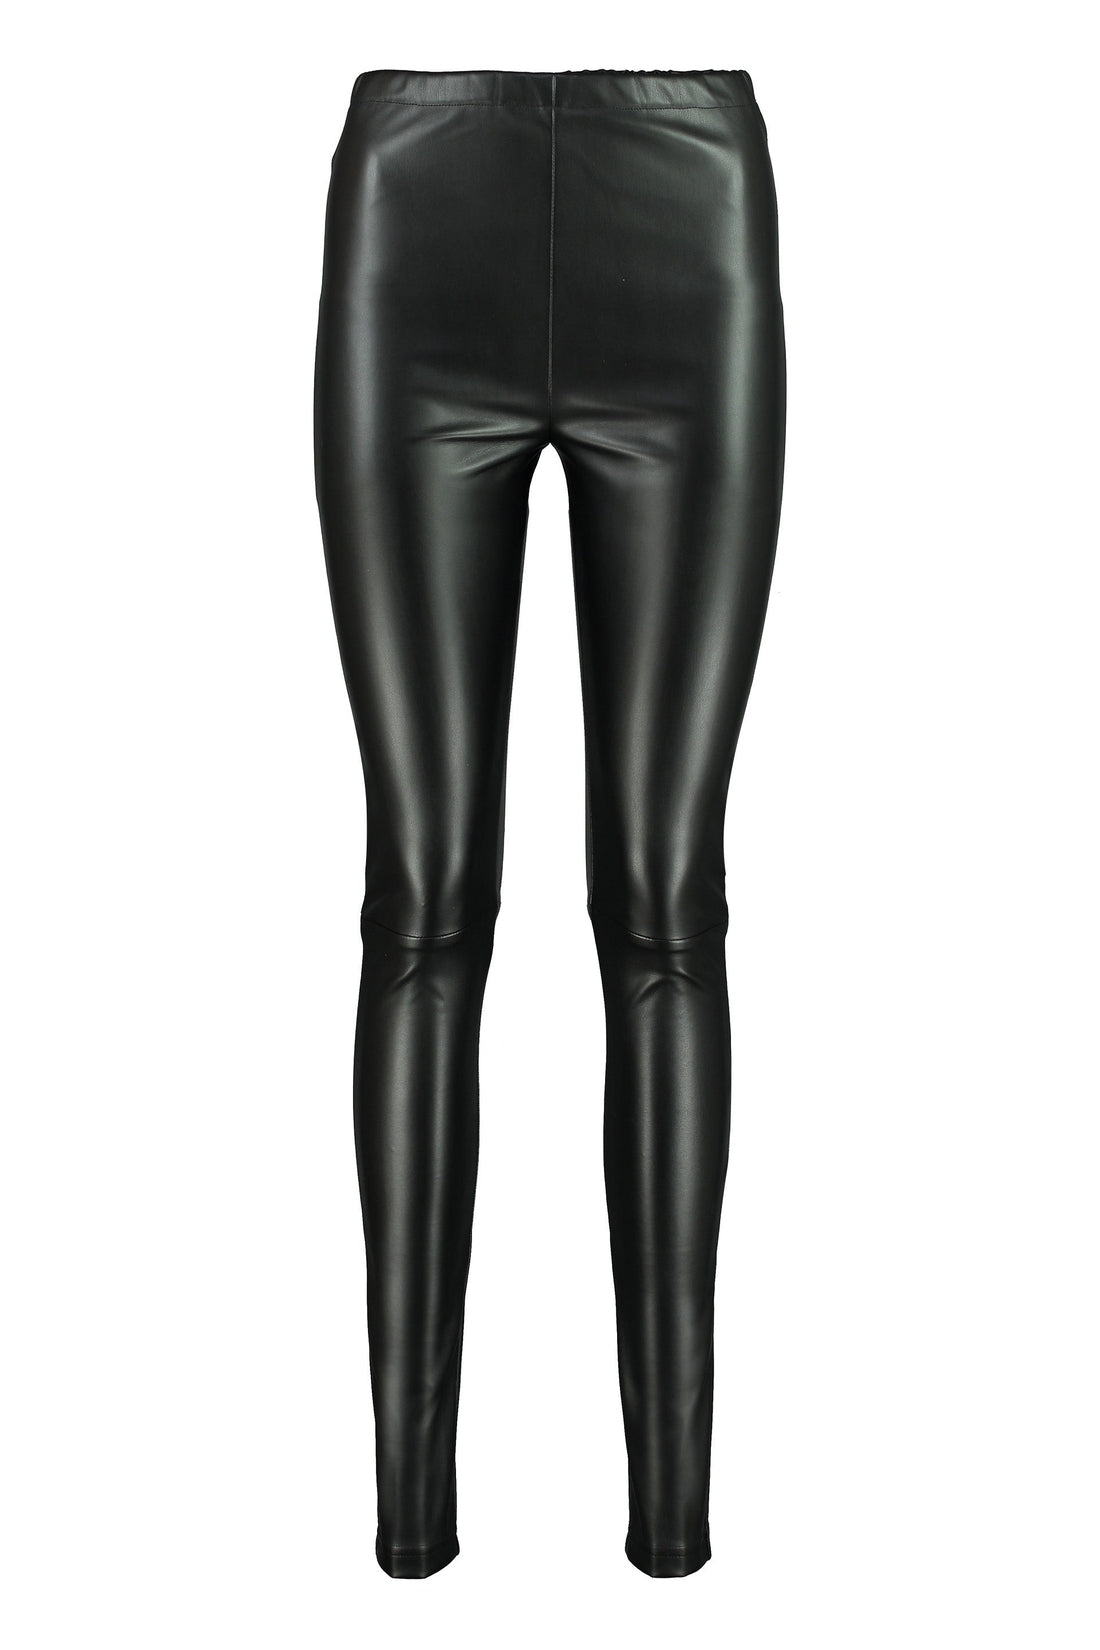 MM6 Maison Margiela-OUTLET-SALE-Faux leather leggings-ARCHIVIST